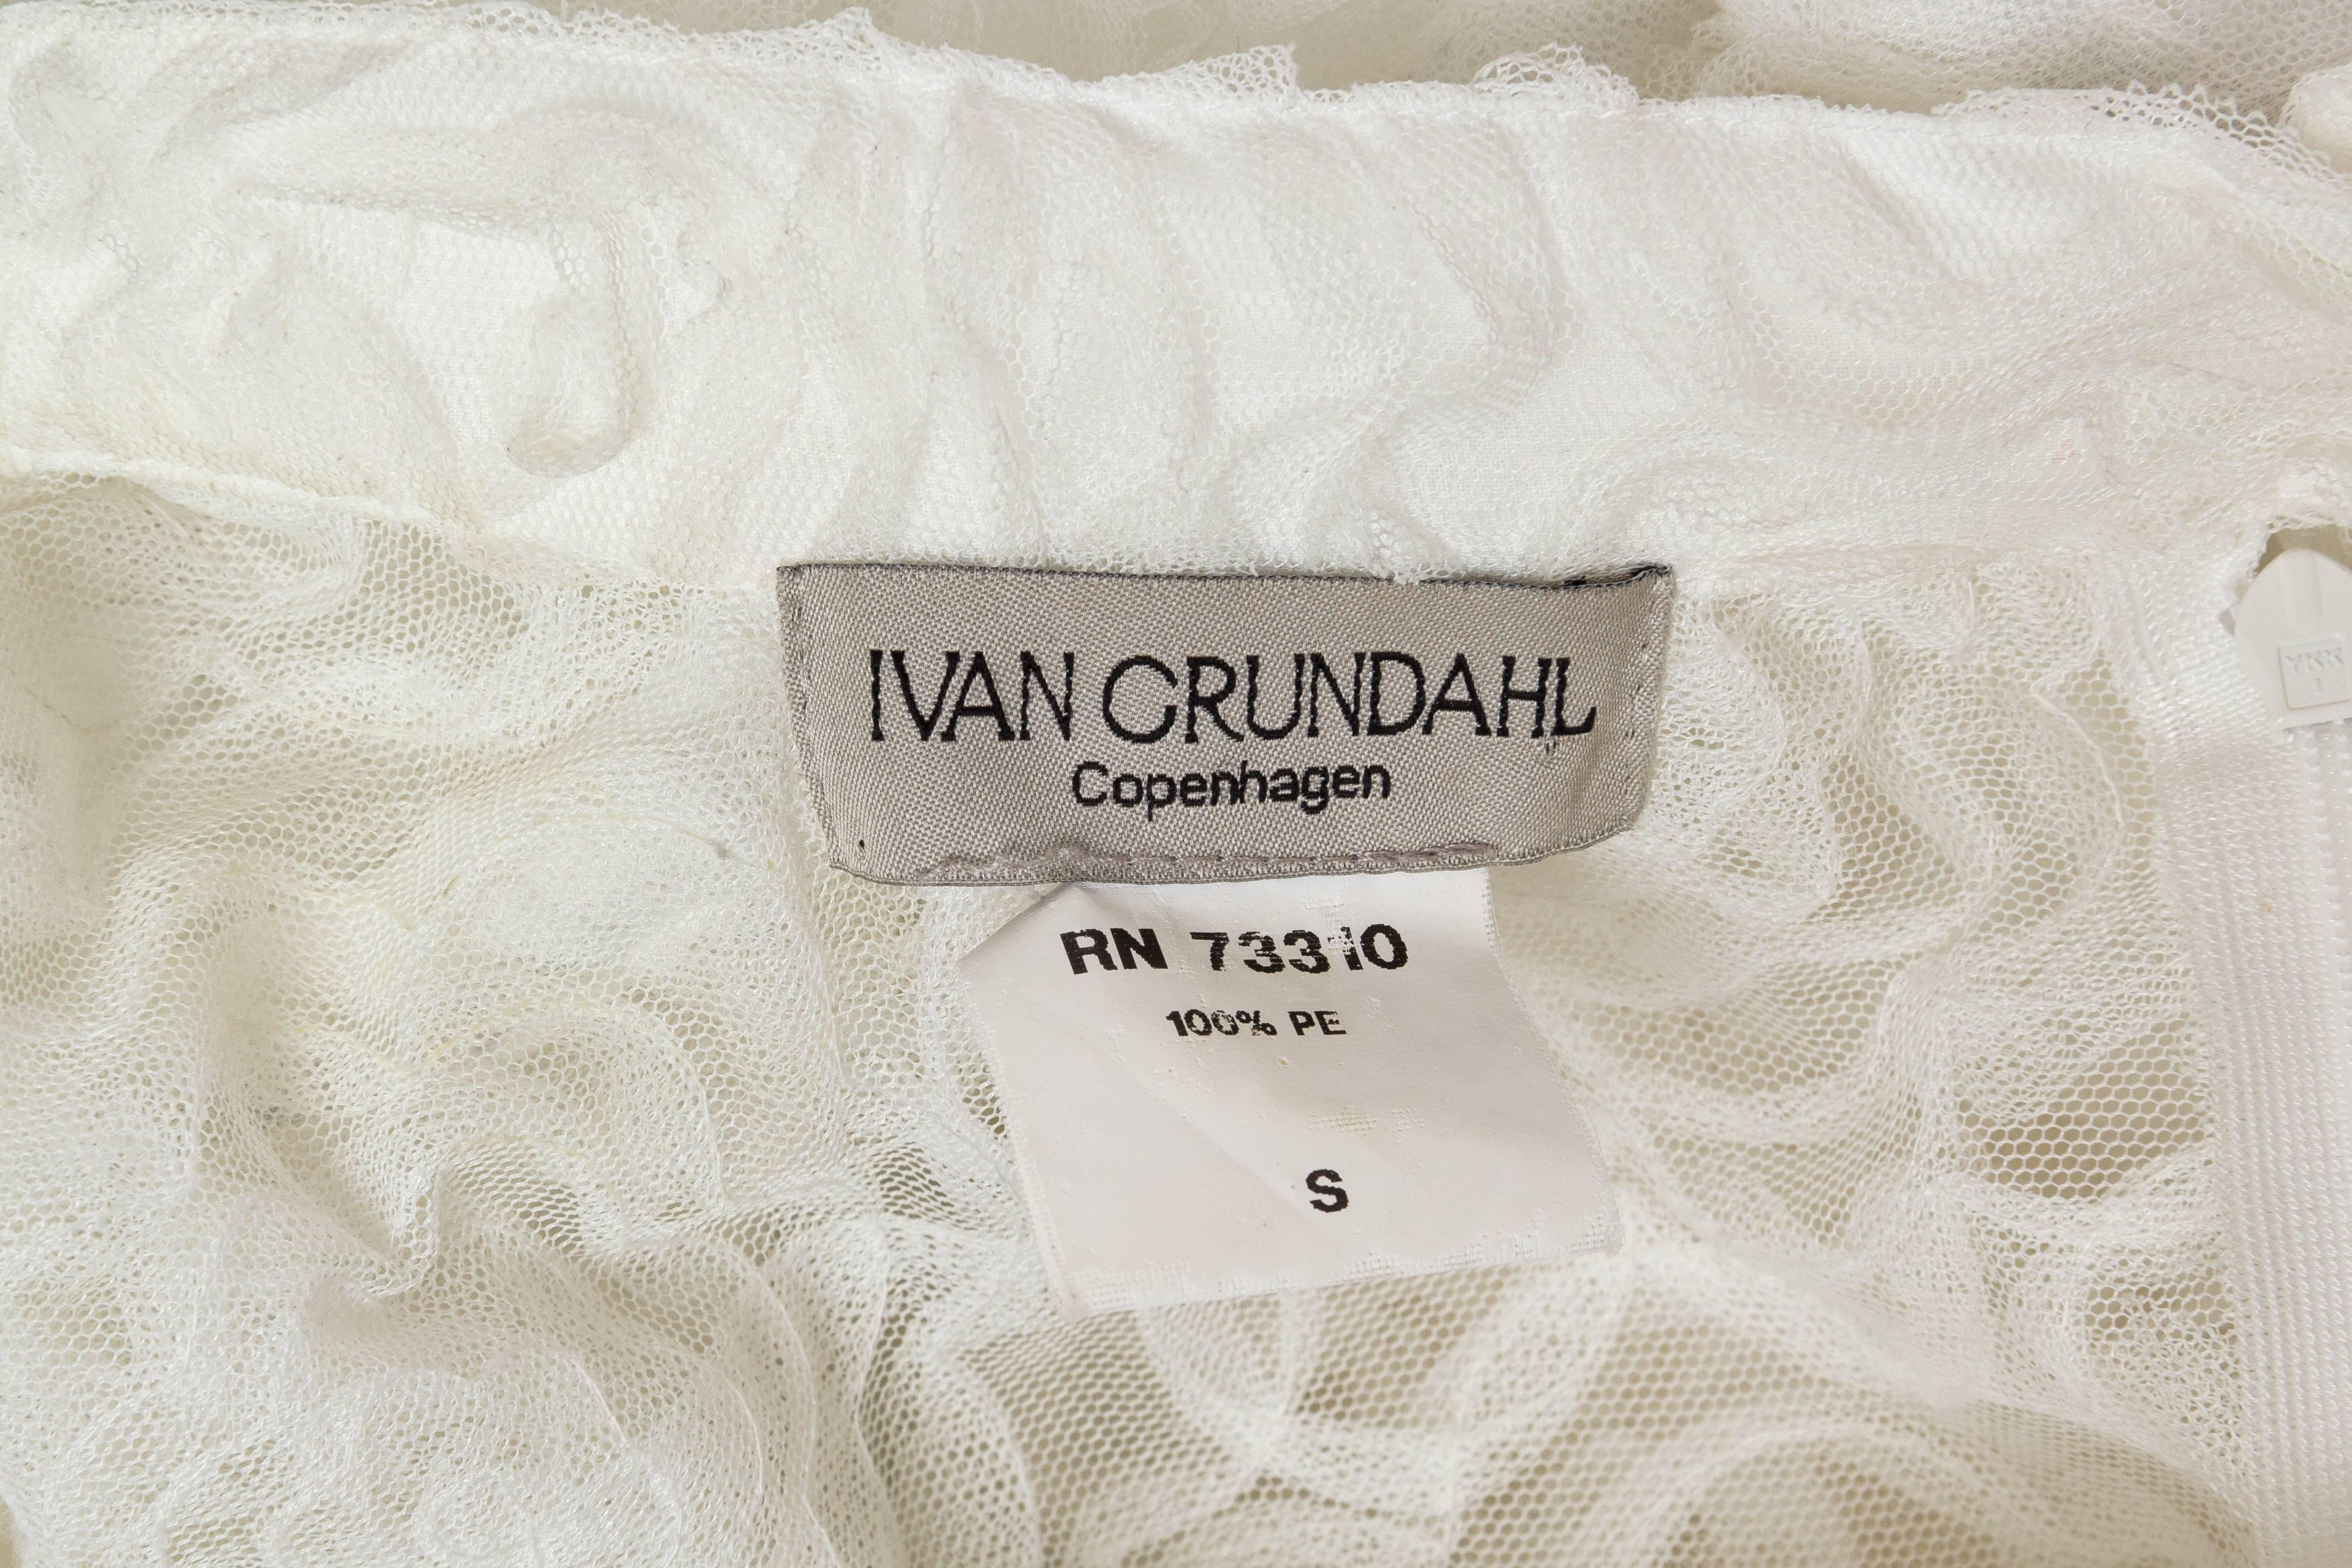 Ivan Grundahl Modernist Skirt 4